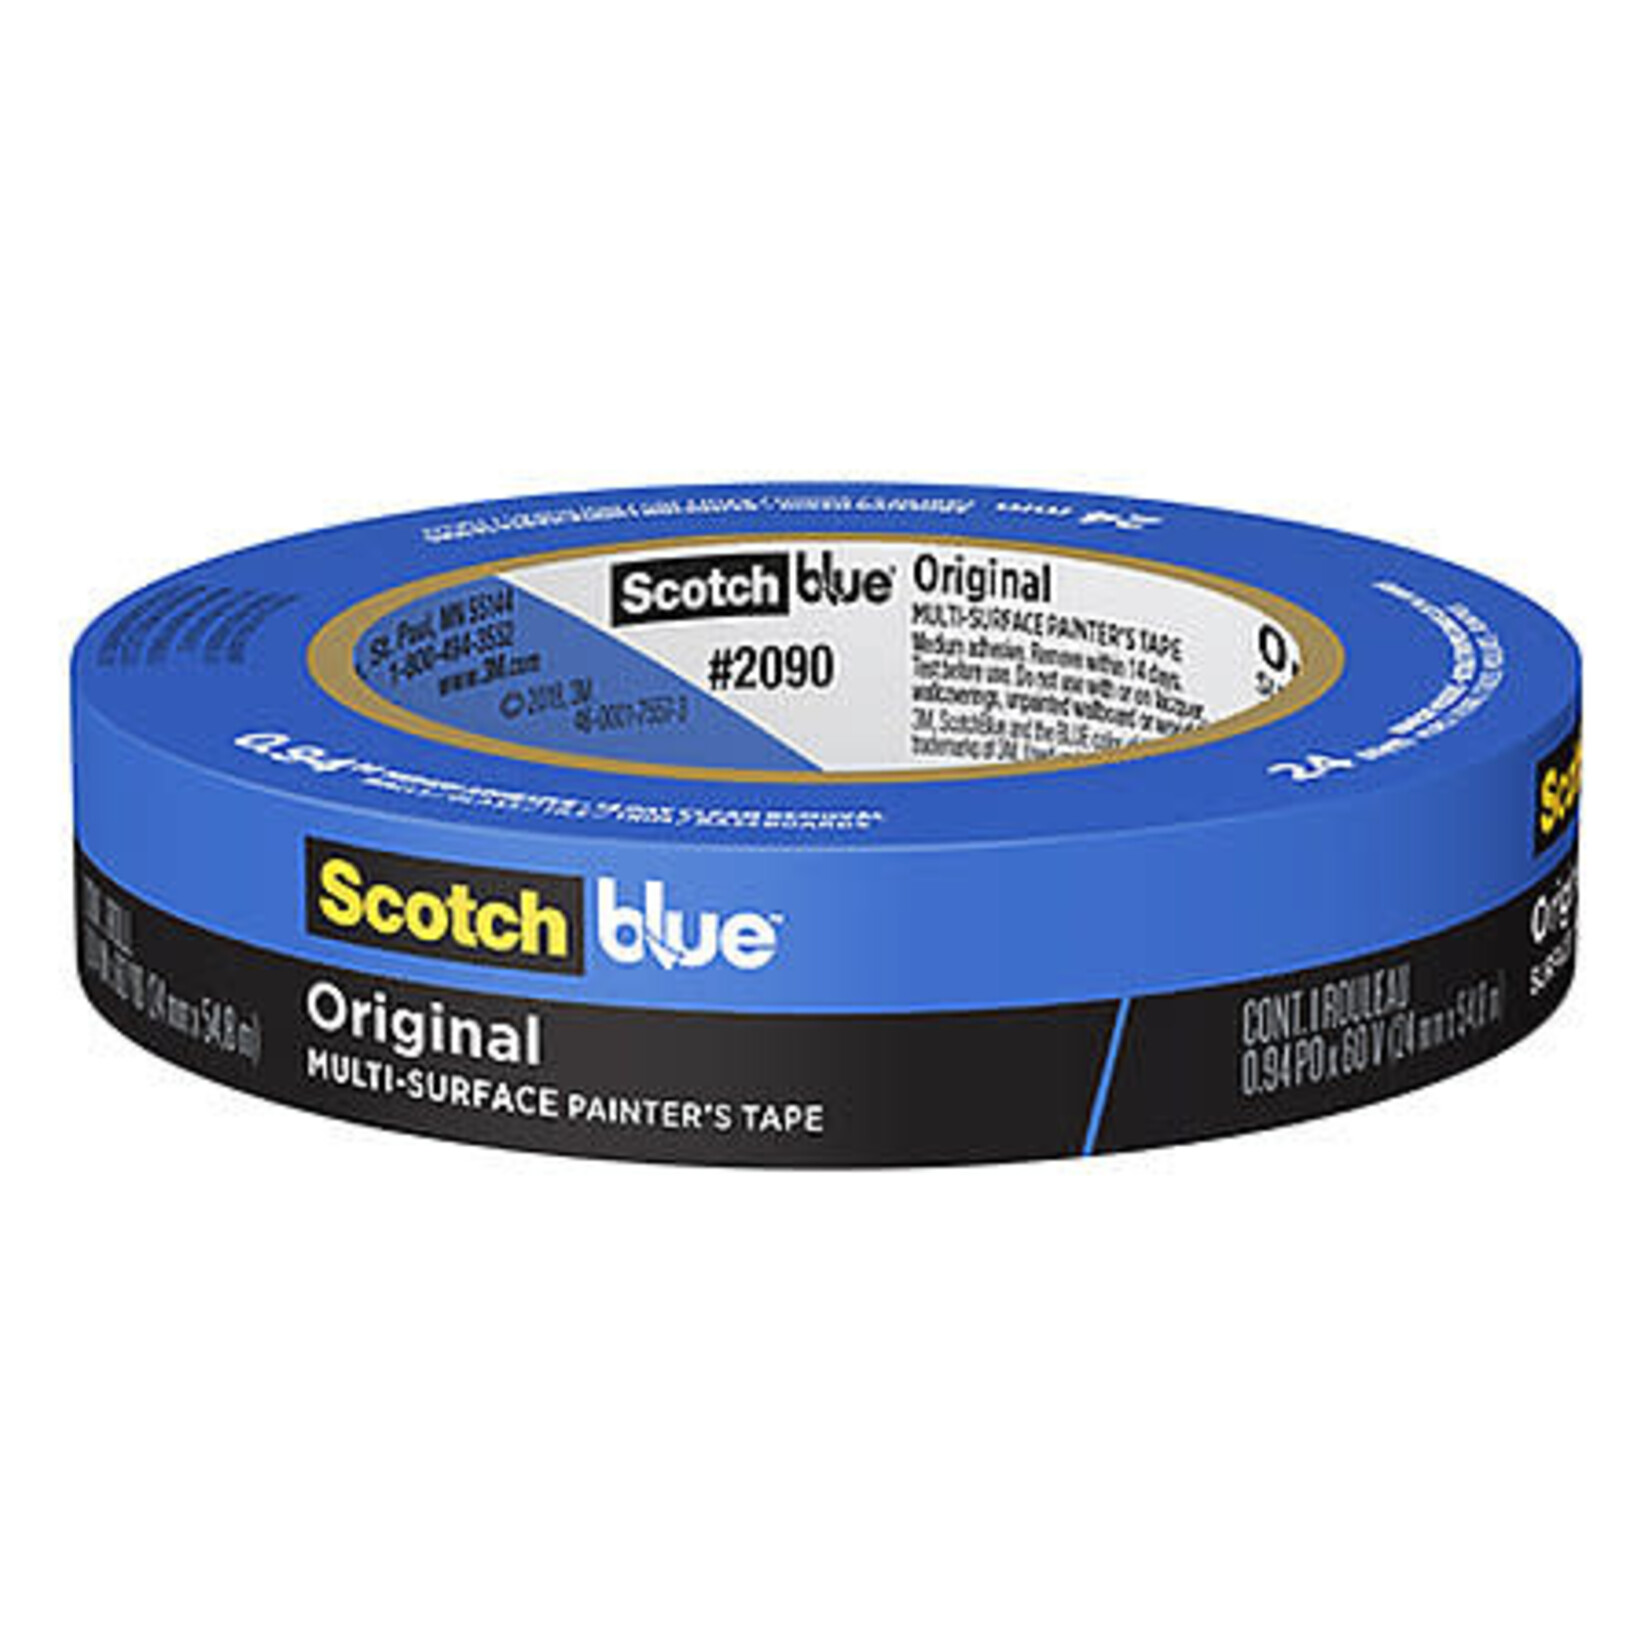 Scotch 3m Tape 2090 Painter Mask Blue 3/4 X60Y